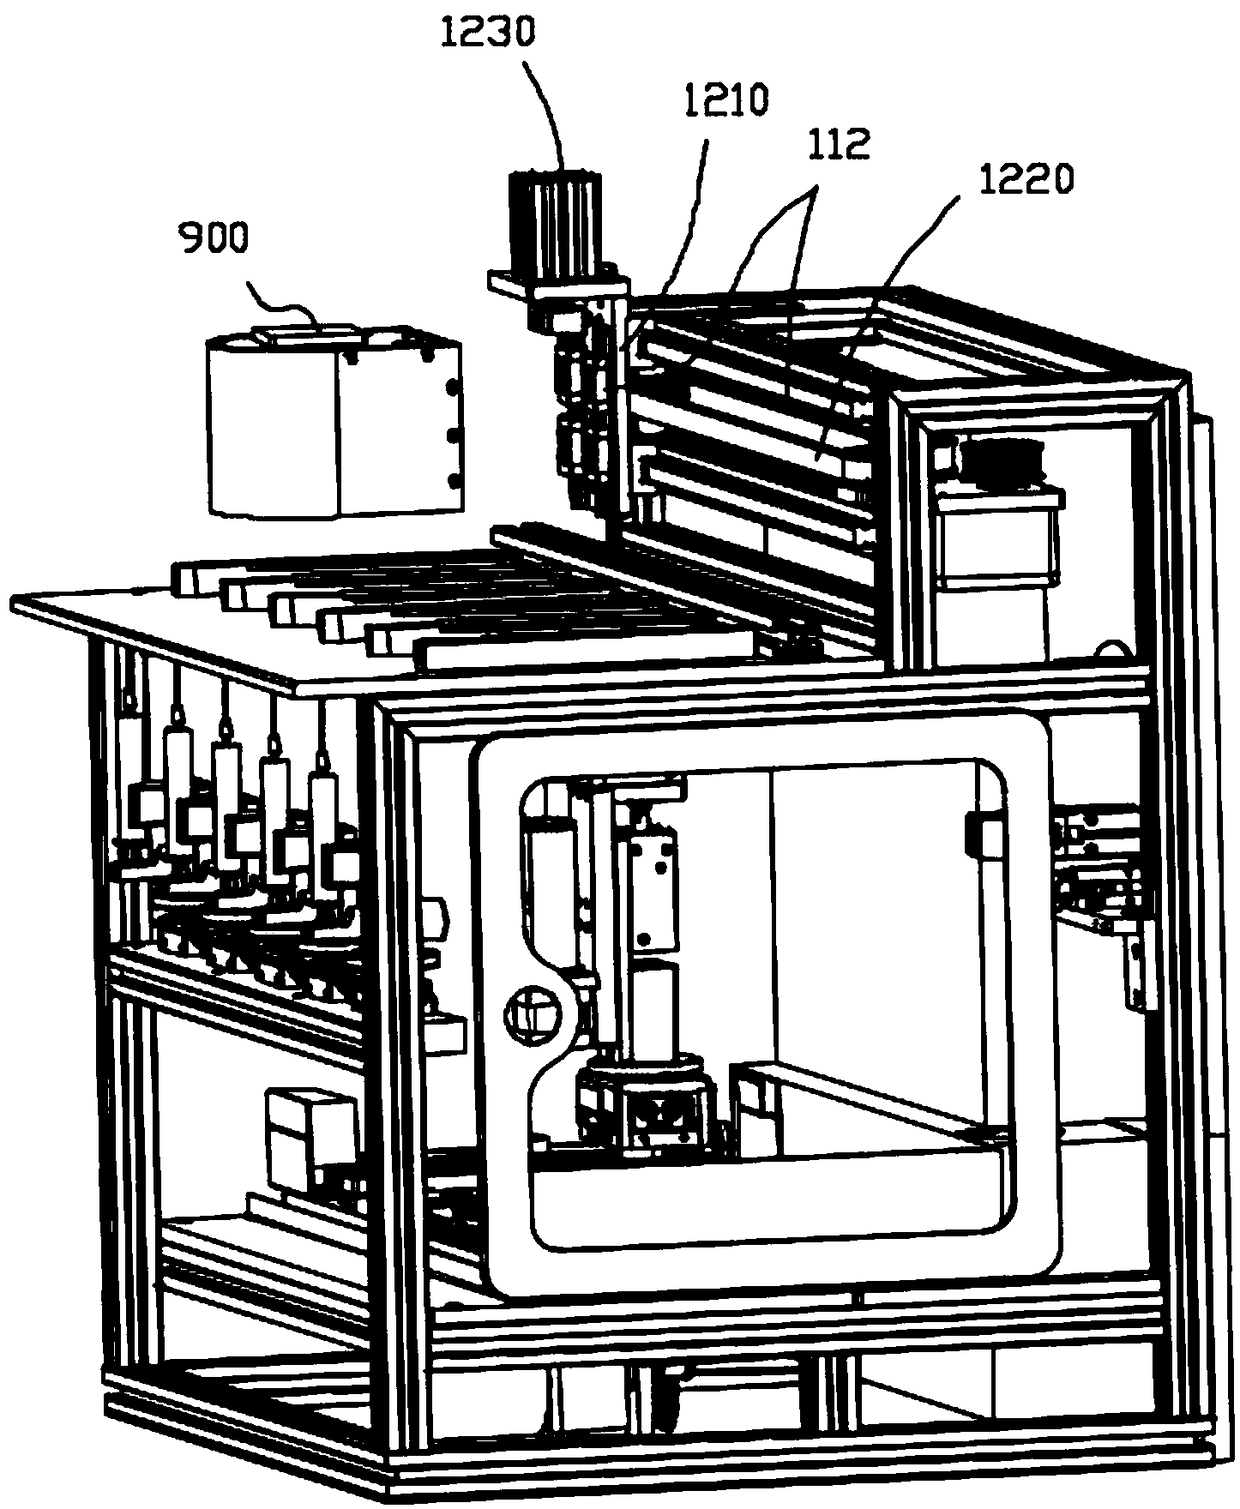 Liquid dispensing method and system